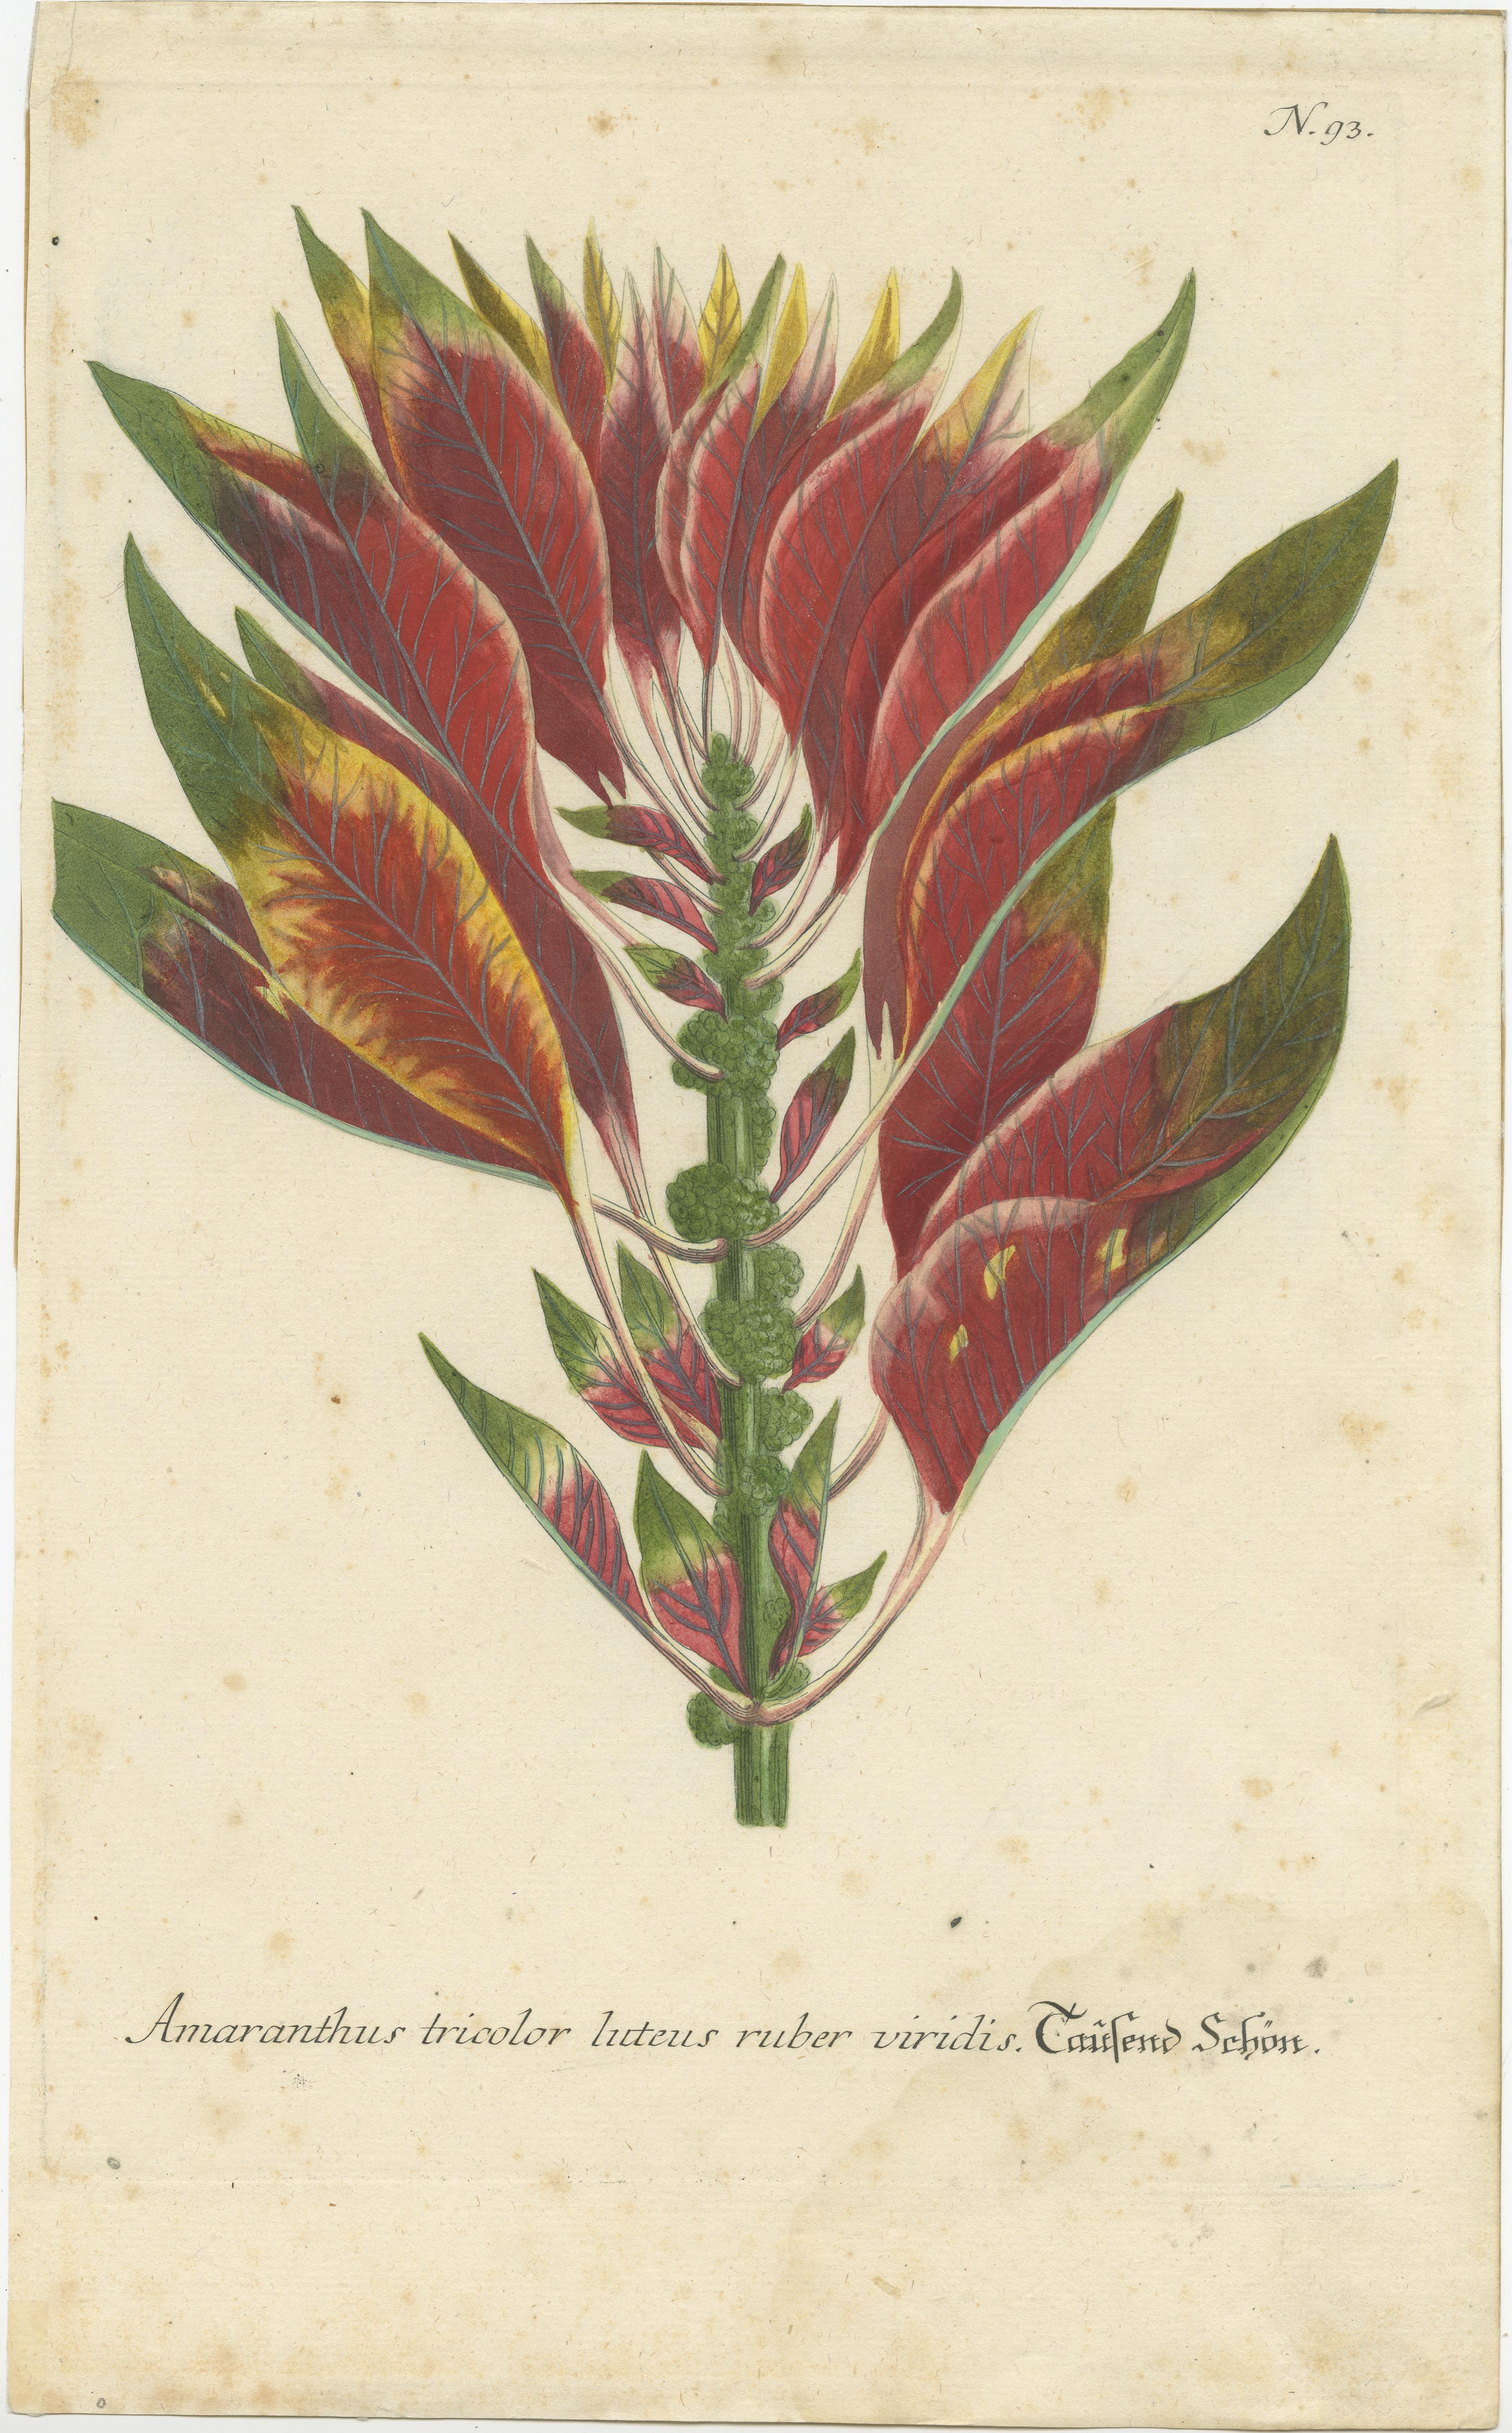 Antiker Druck mit dem Titel 'Amaranthus tricolor (..)'. Handgefertigter Schabkunststich von Amaranthus tricolor, bekannt als essbarer Amaranth. Dieser Druck stammt aus der 